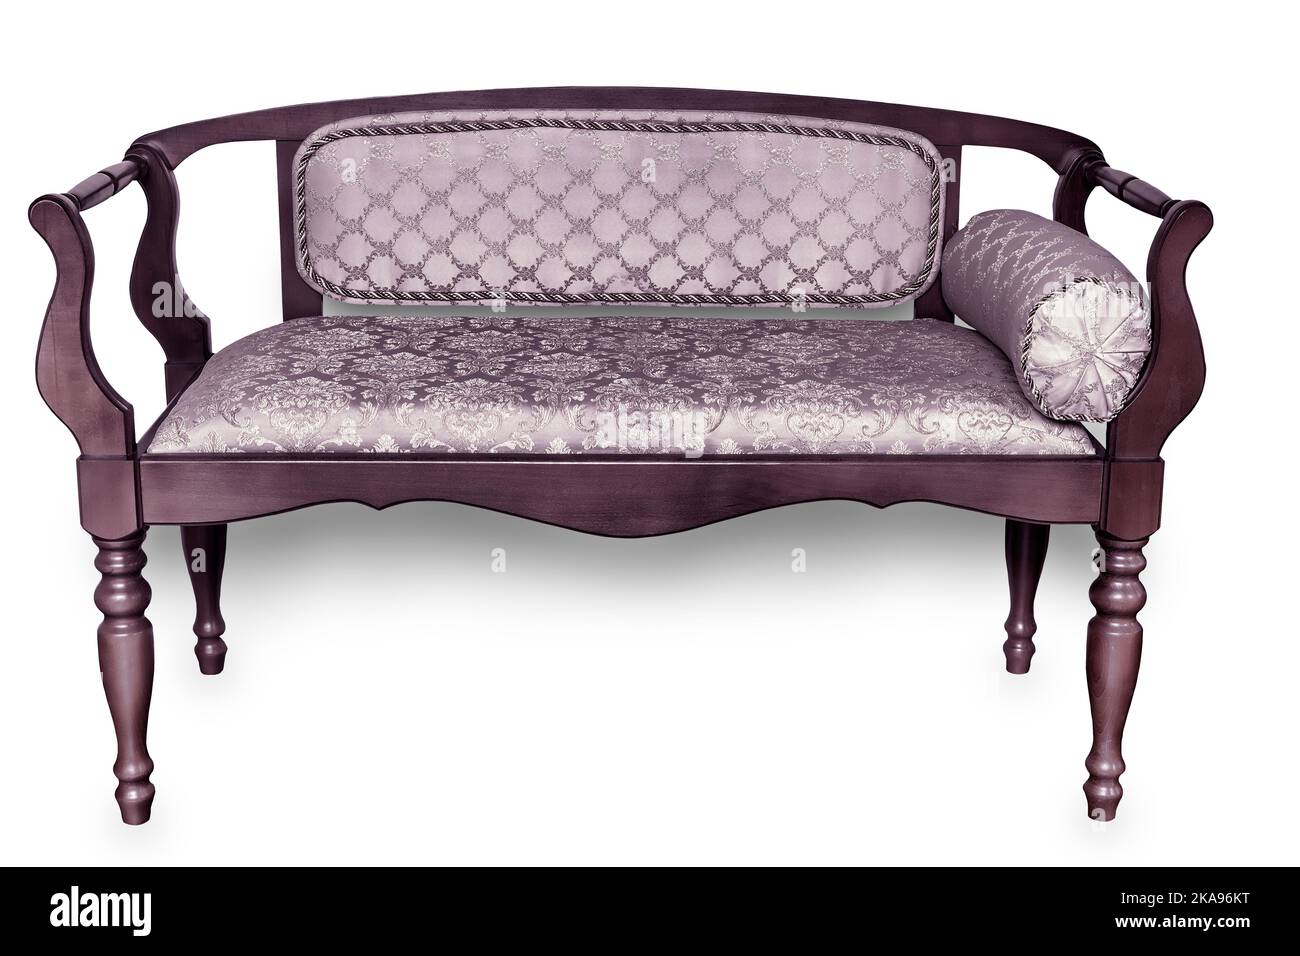 Un bonito sofá de madera de estilo vintage con detalles curvos y un asiento suave cubierto de satén con un estampado sobre fondo blanco. Estilo vintage en t Foto de stock